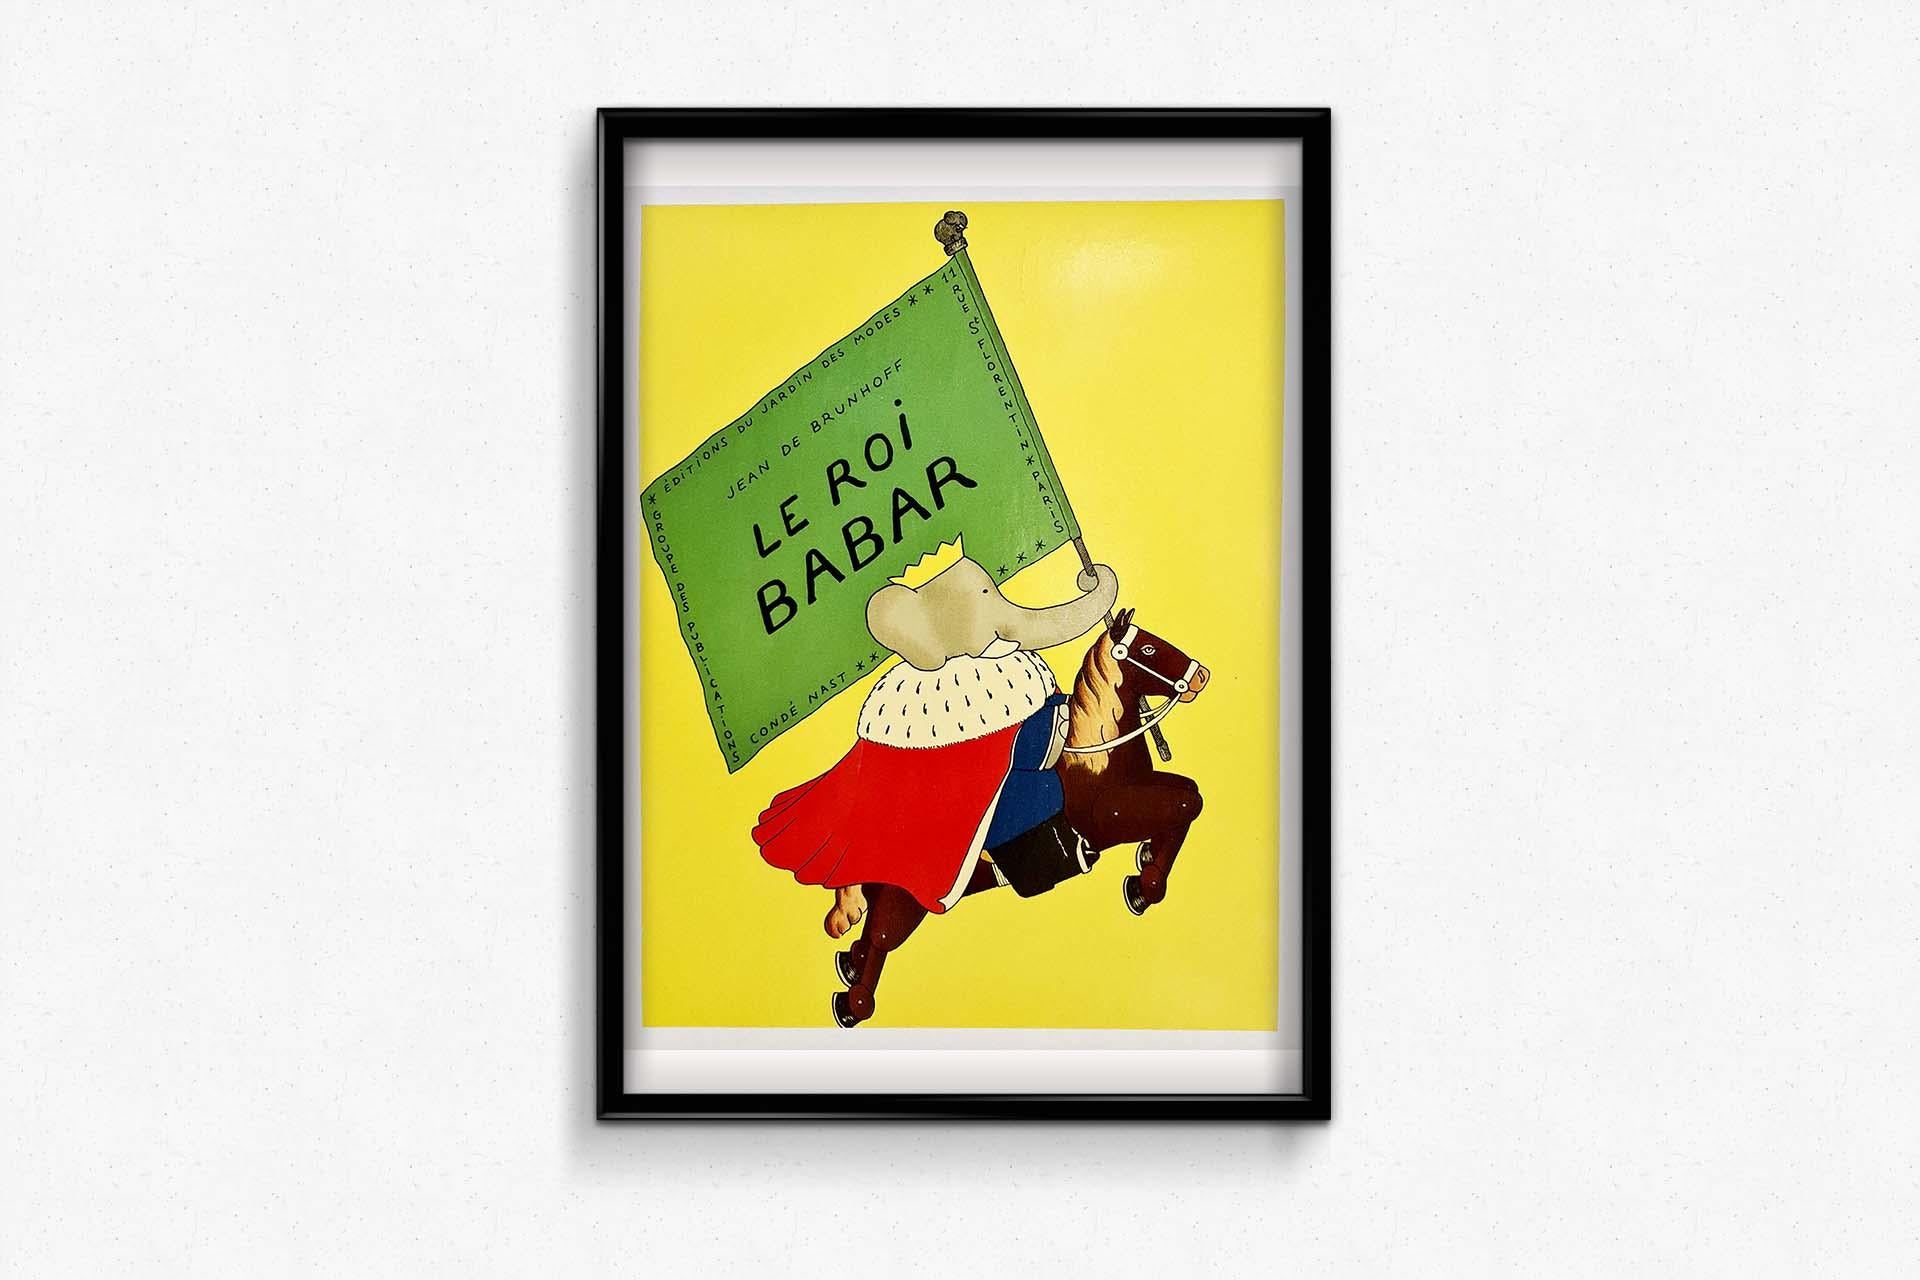 babar vintage poster